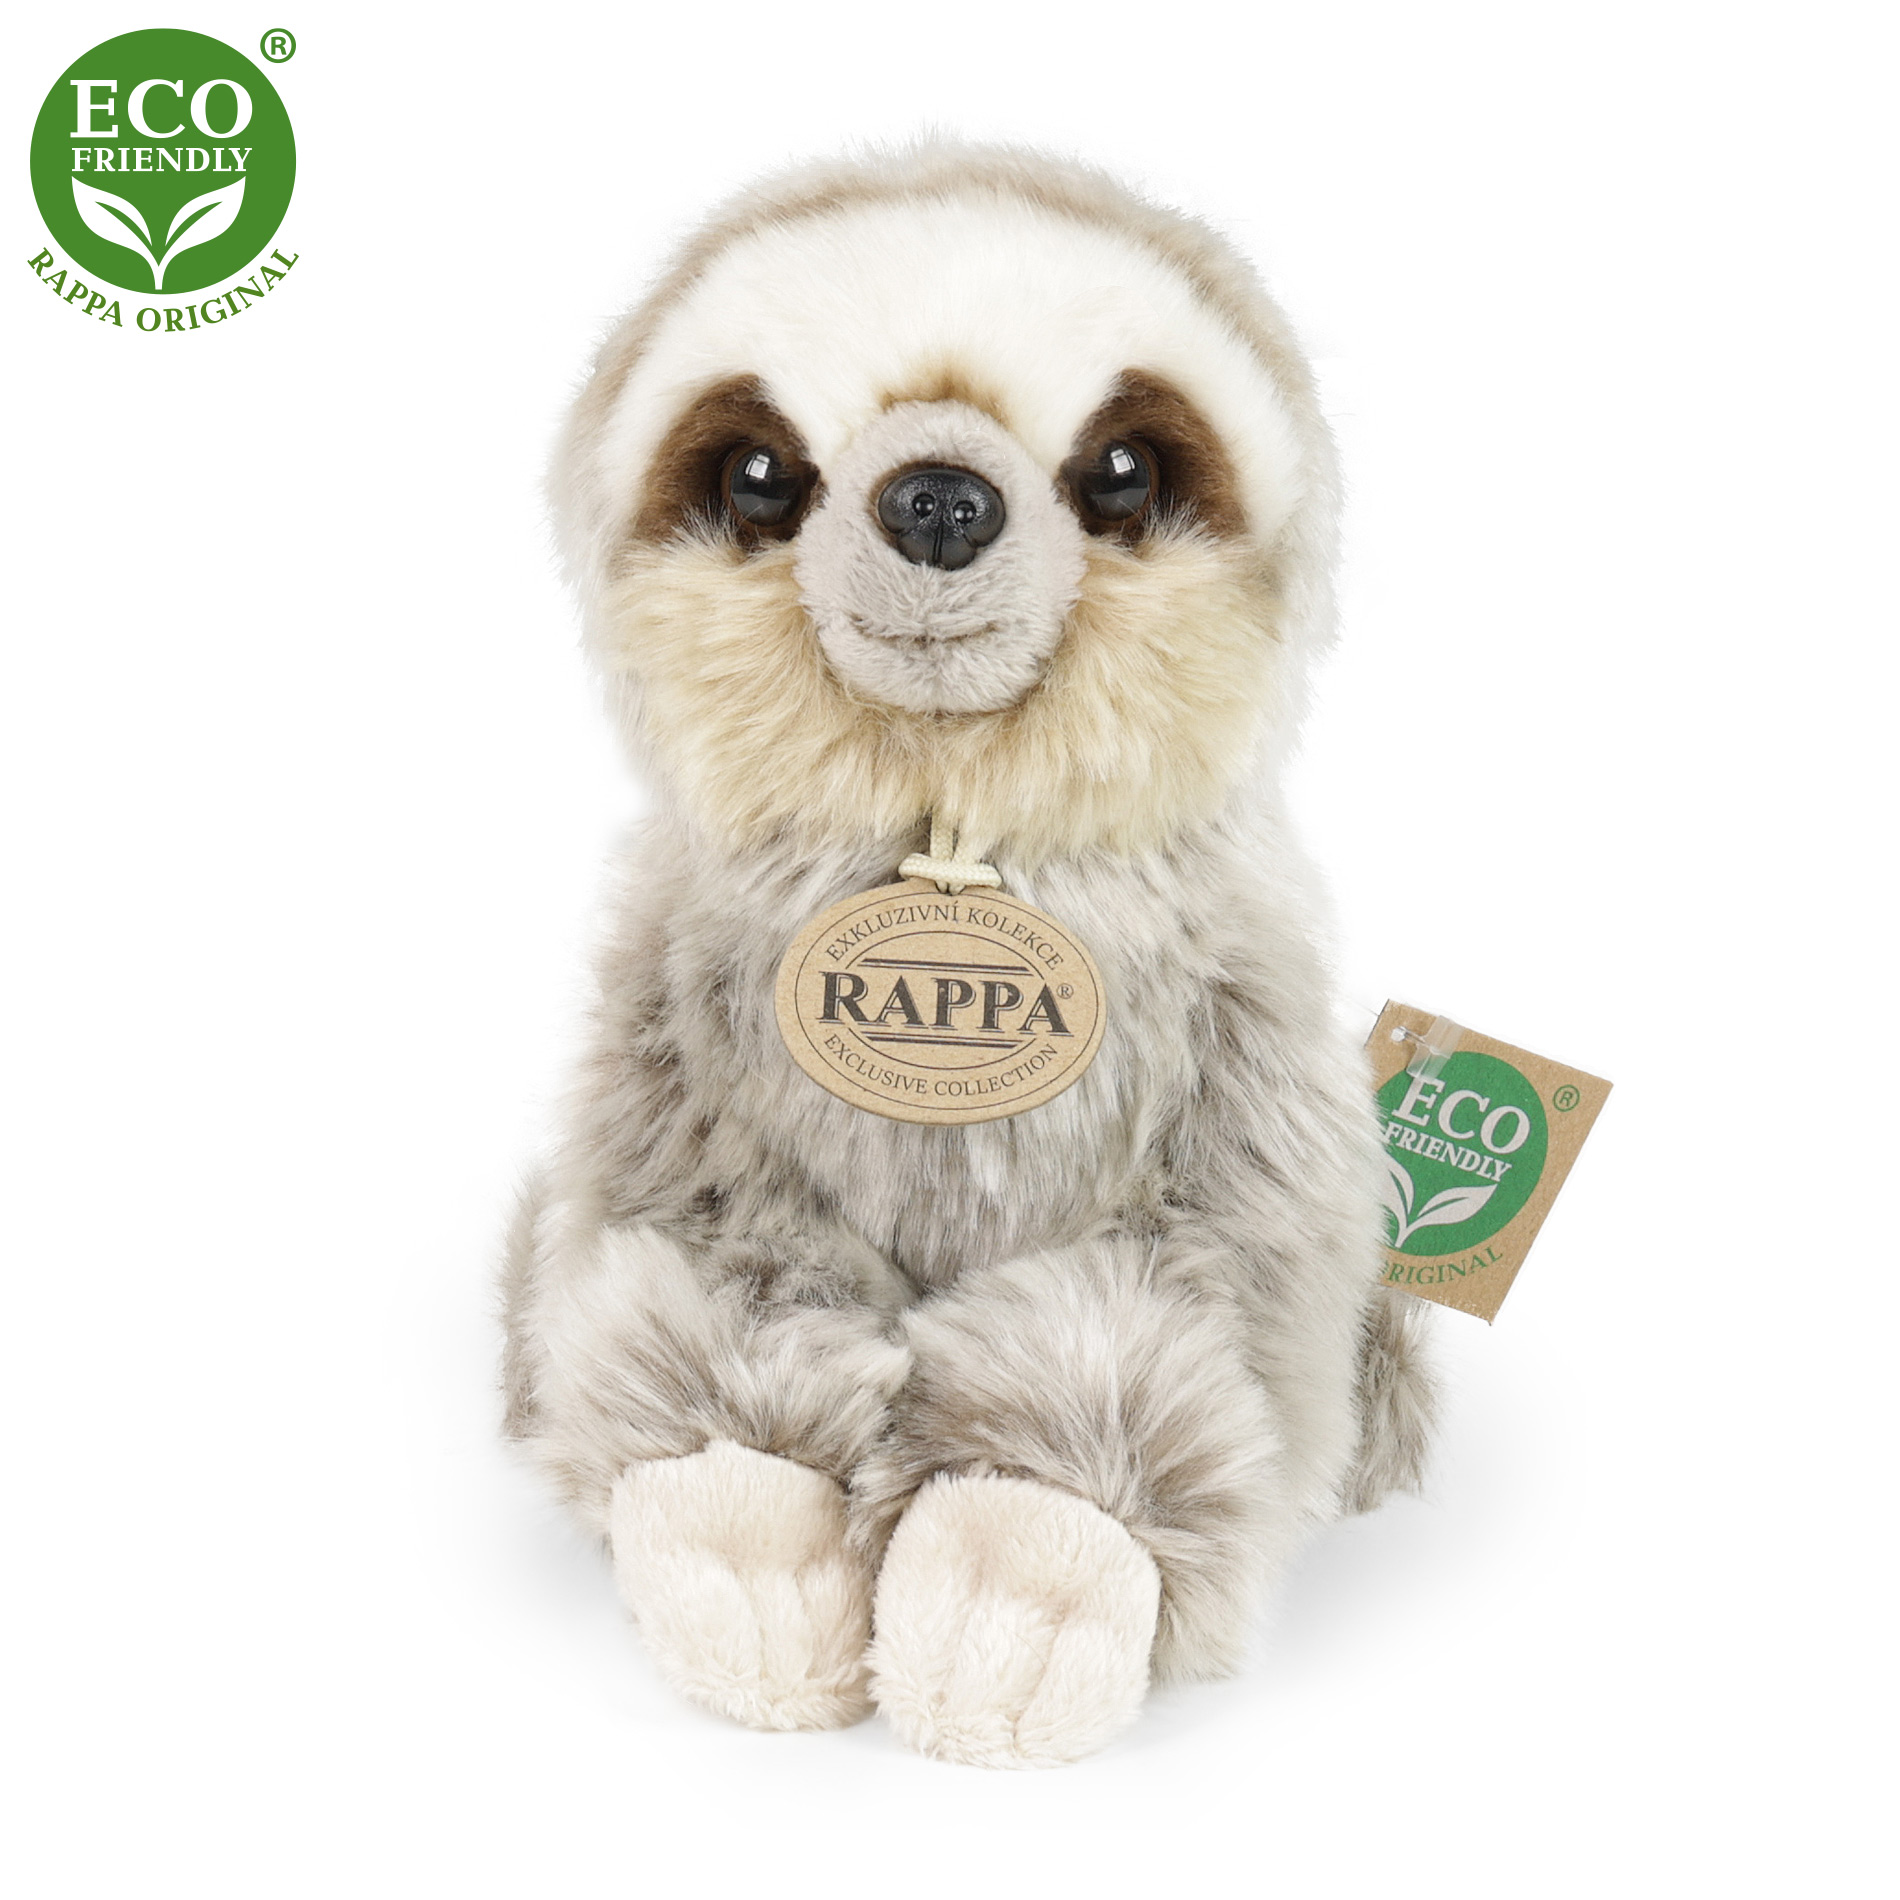 Rappa Eco-Friendly - Plyšový lenochod sedící 18 cm